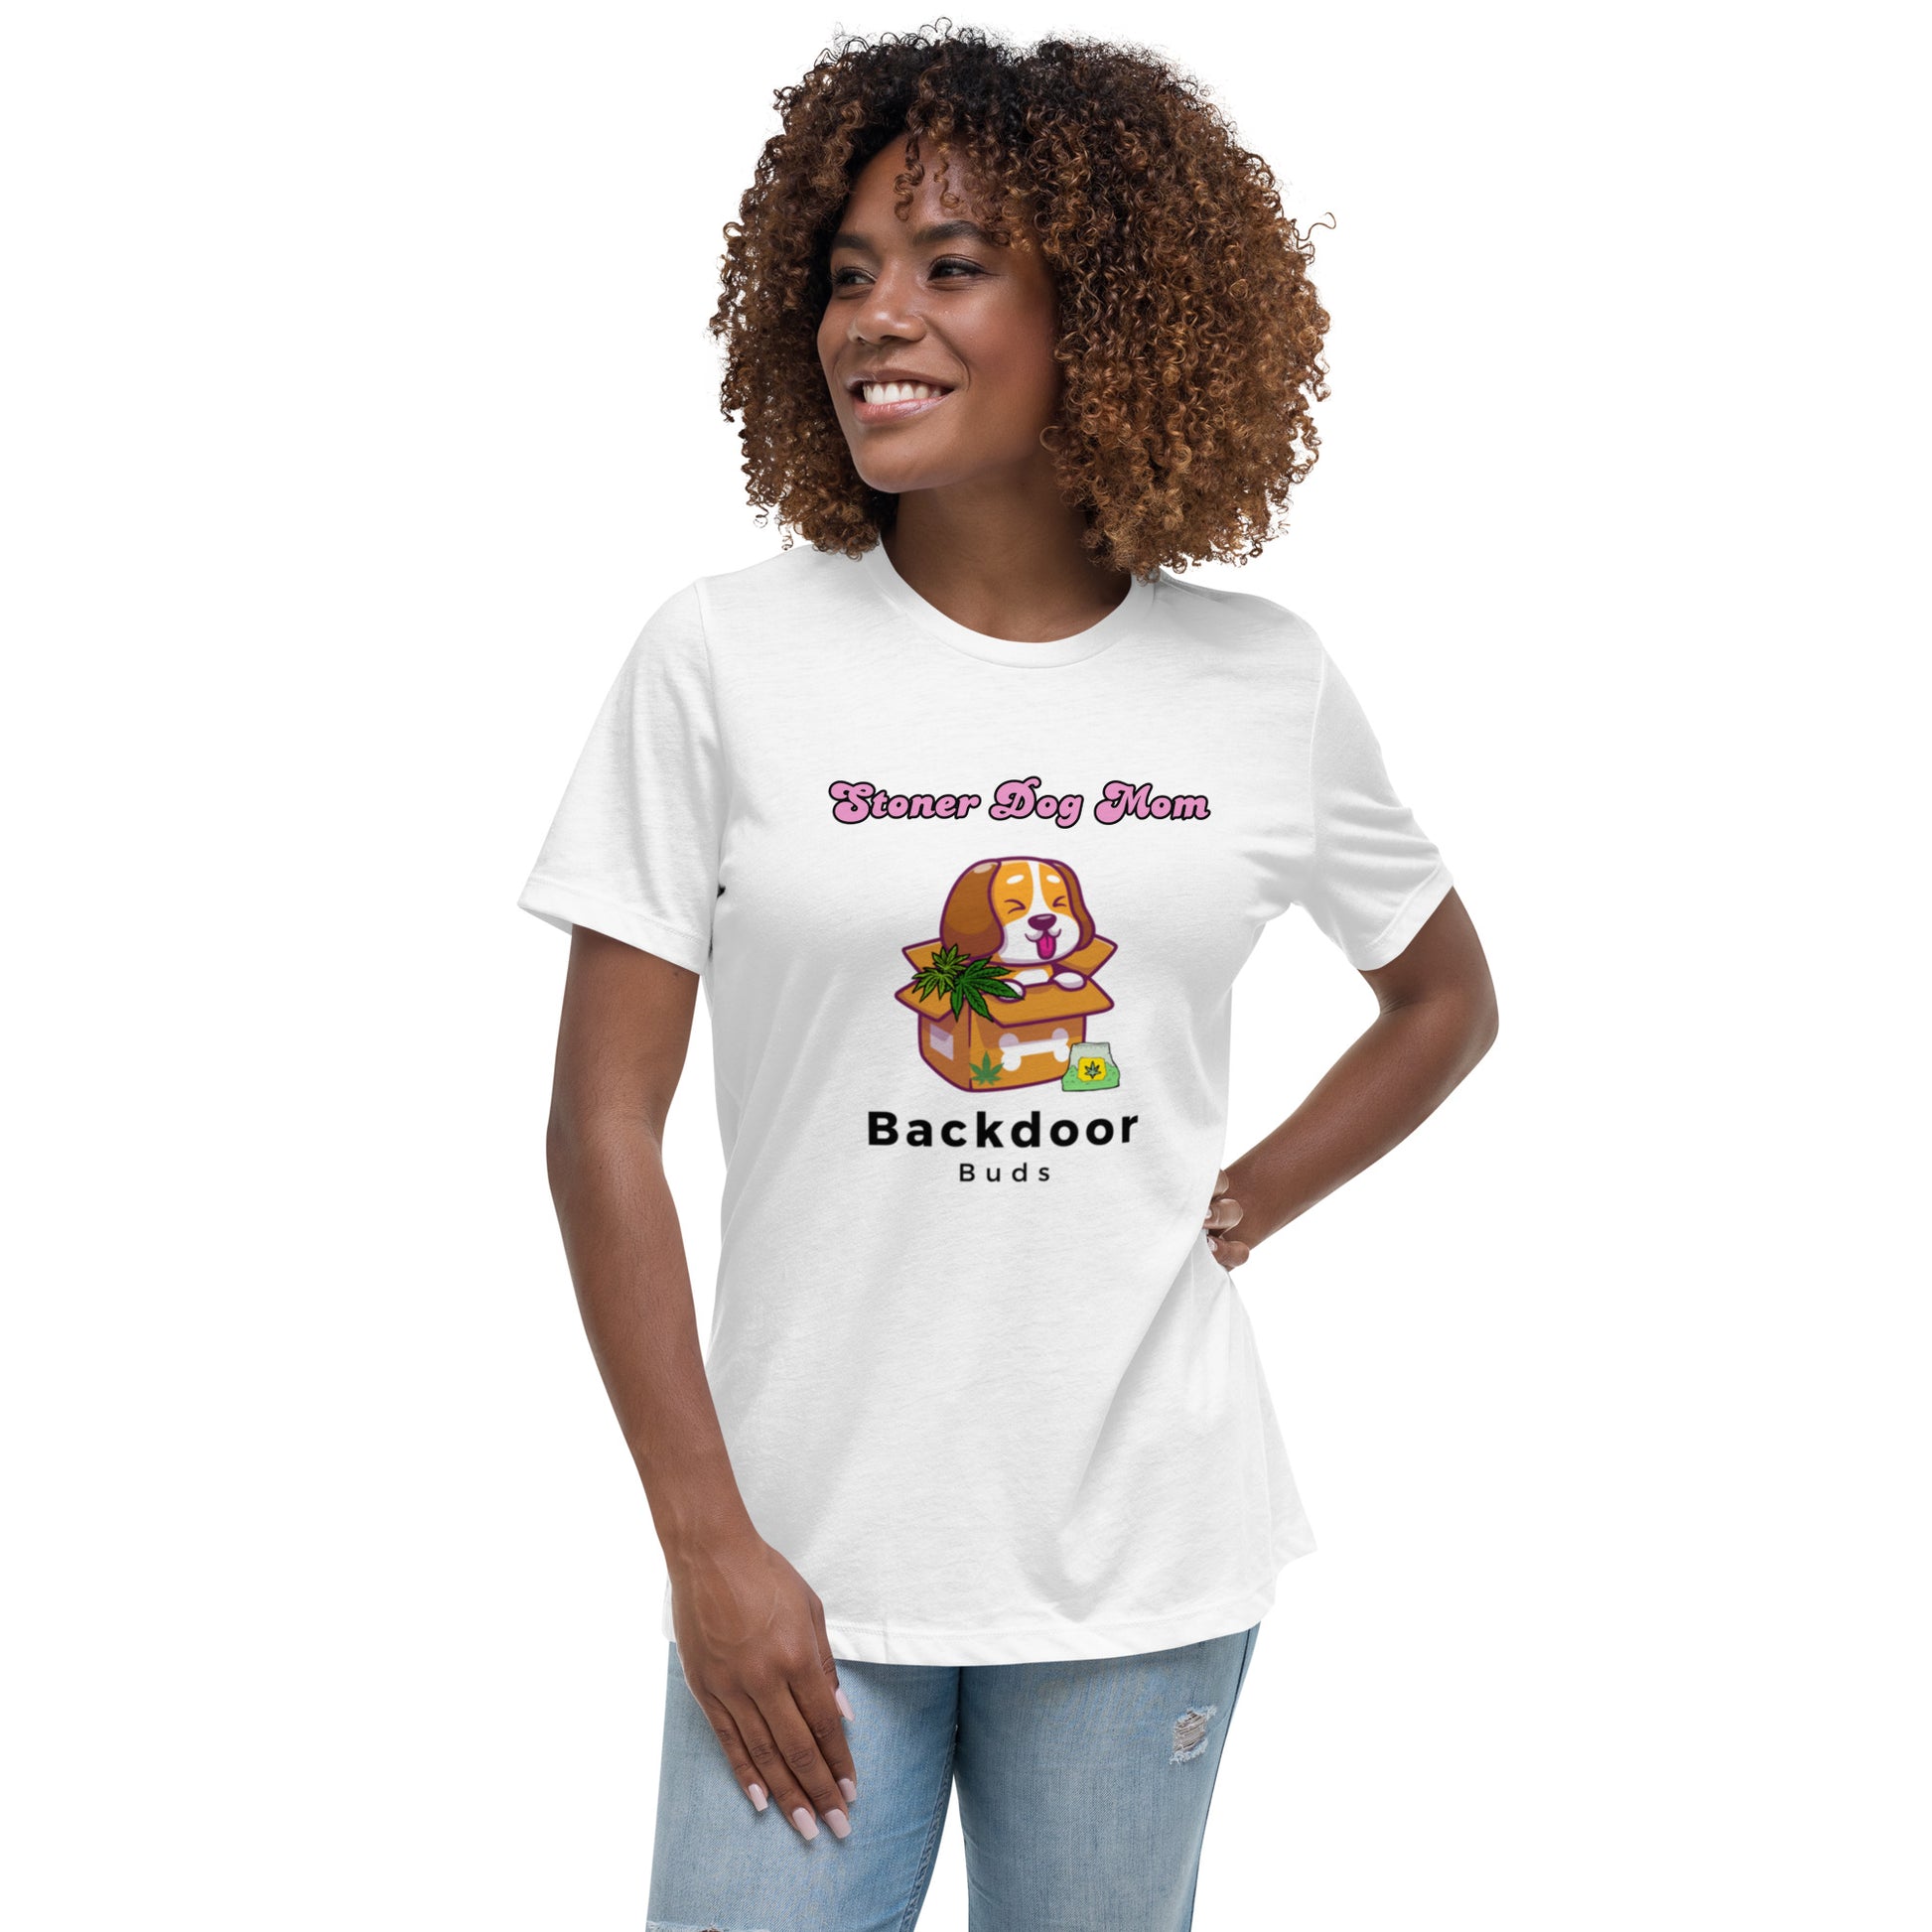 Women's Dog Mom T-Shirt - BackDoorBudsUSA